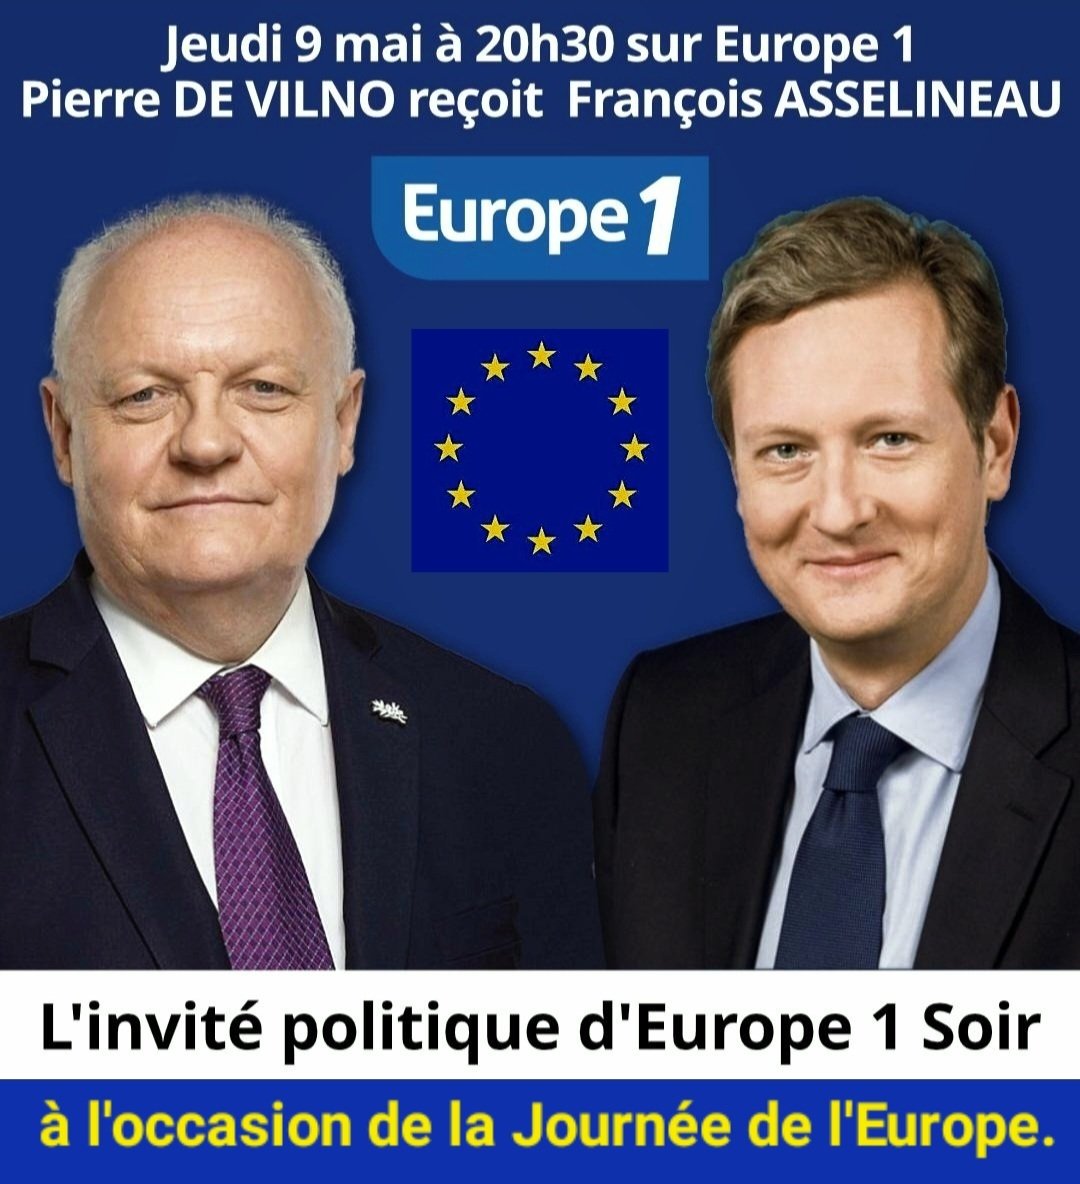 🎙 𝗘𝗨𝗥𝗢𝗣𝗘 𝟭
Je suis l'invité politique, ce jeudi 9 mai 2024 - Journée de l'Europe-, par le journaliste Pierre de Vilno dans l'émission EUROPE SOIR, pendant 7 minutes.